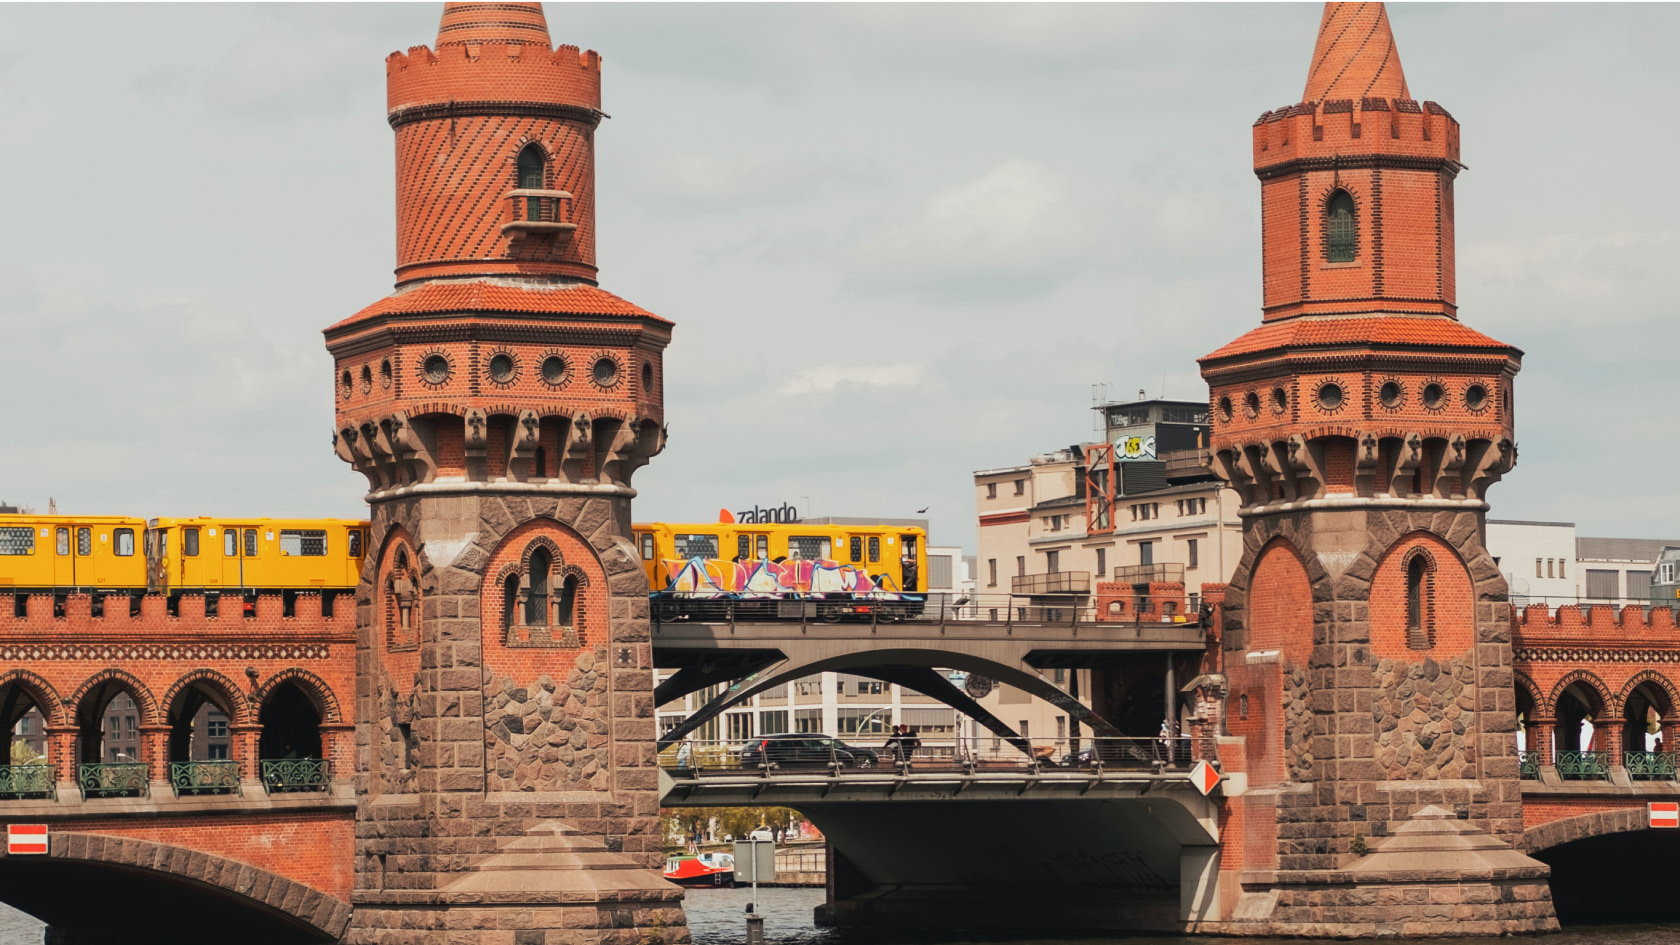 Blick auf die Oberbaumbrücke zwischen Friedrichshain & Kreuzberg - architektonischer Höhepunkt beim Stadtspaziergang durch Berlin